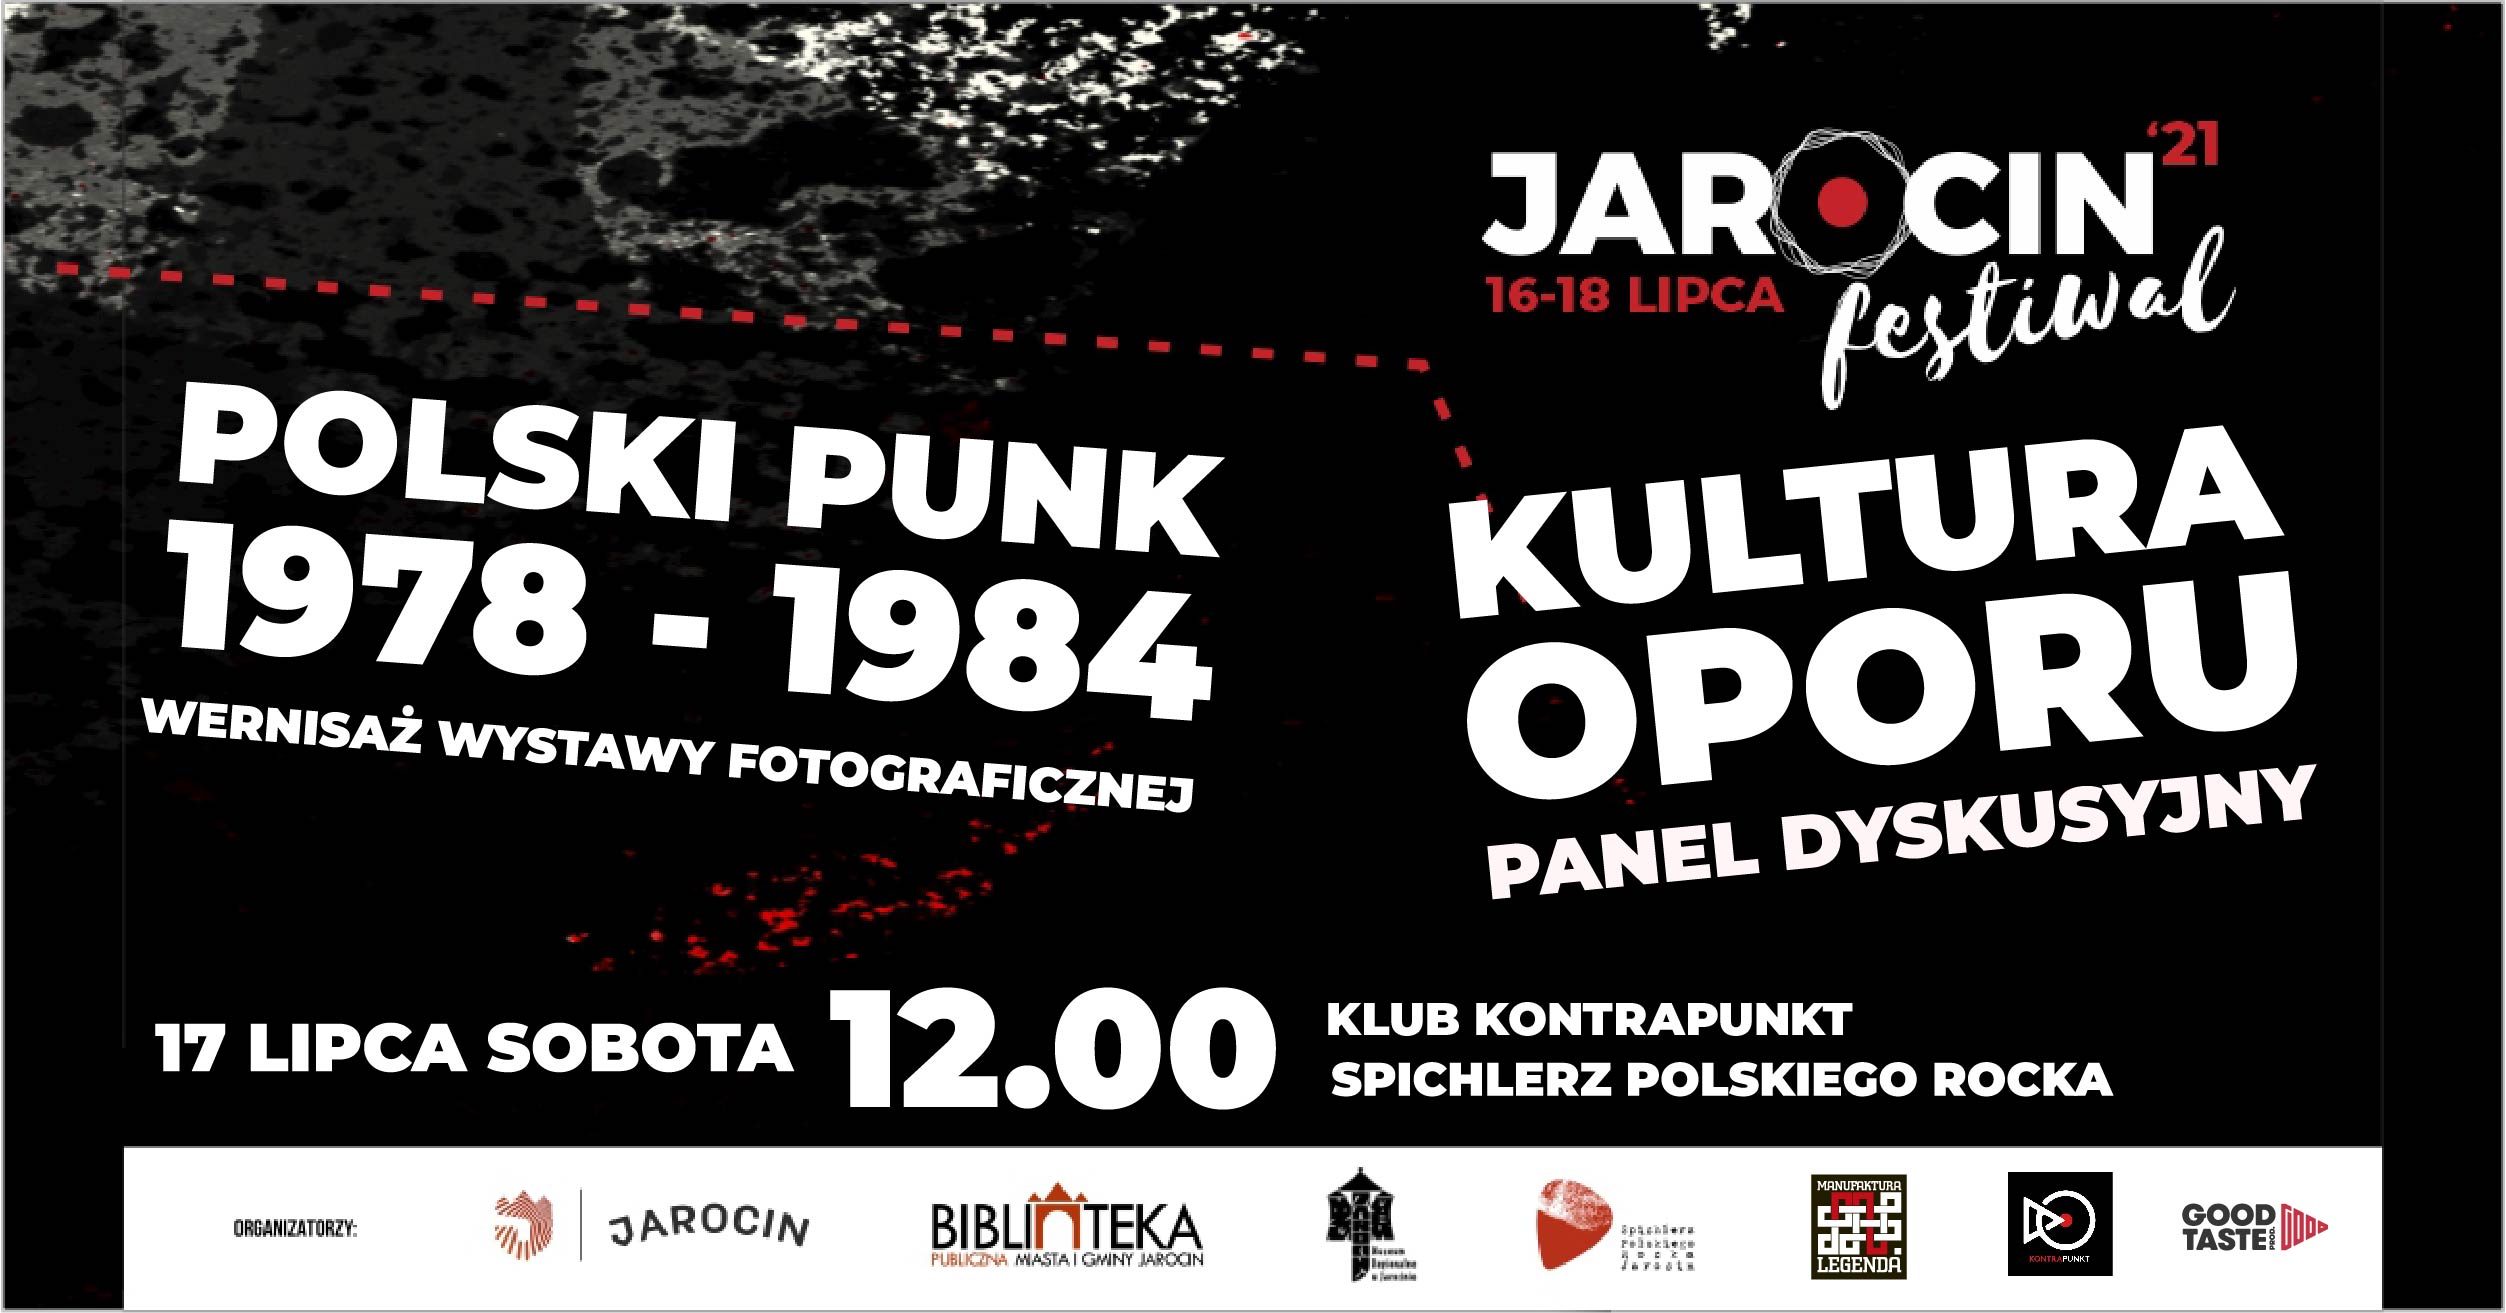 Jarocin Festiwal 2021 – WERNISAŻ WYSTAWY „POLSKI PUNK 1978-1984” ORAZ PANEL DYSKUSYJNY „KULTURA OPORU”  w SPR.